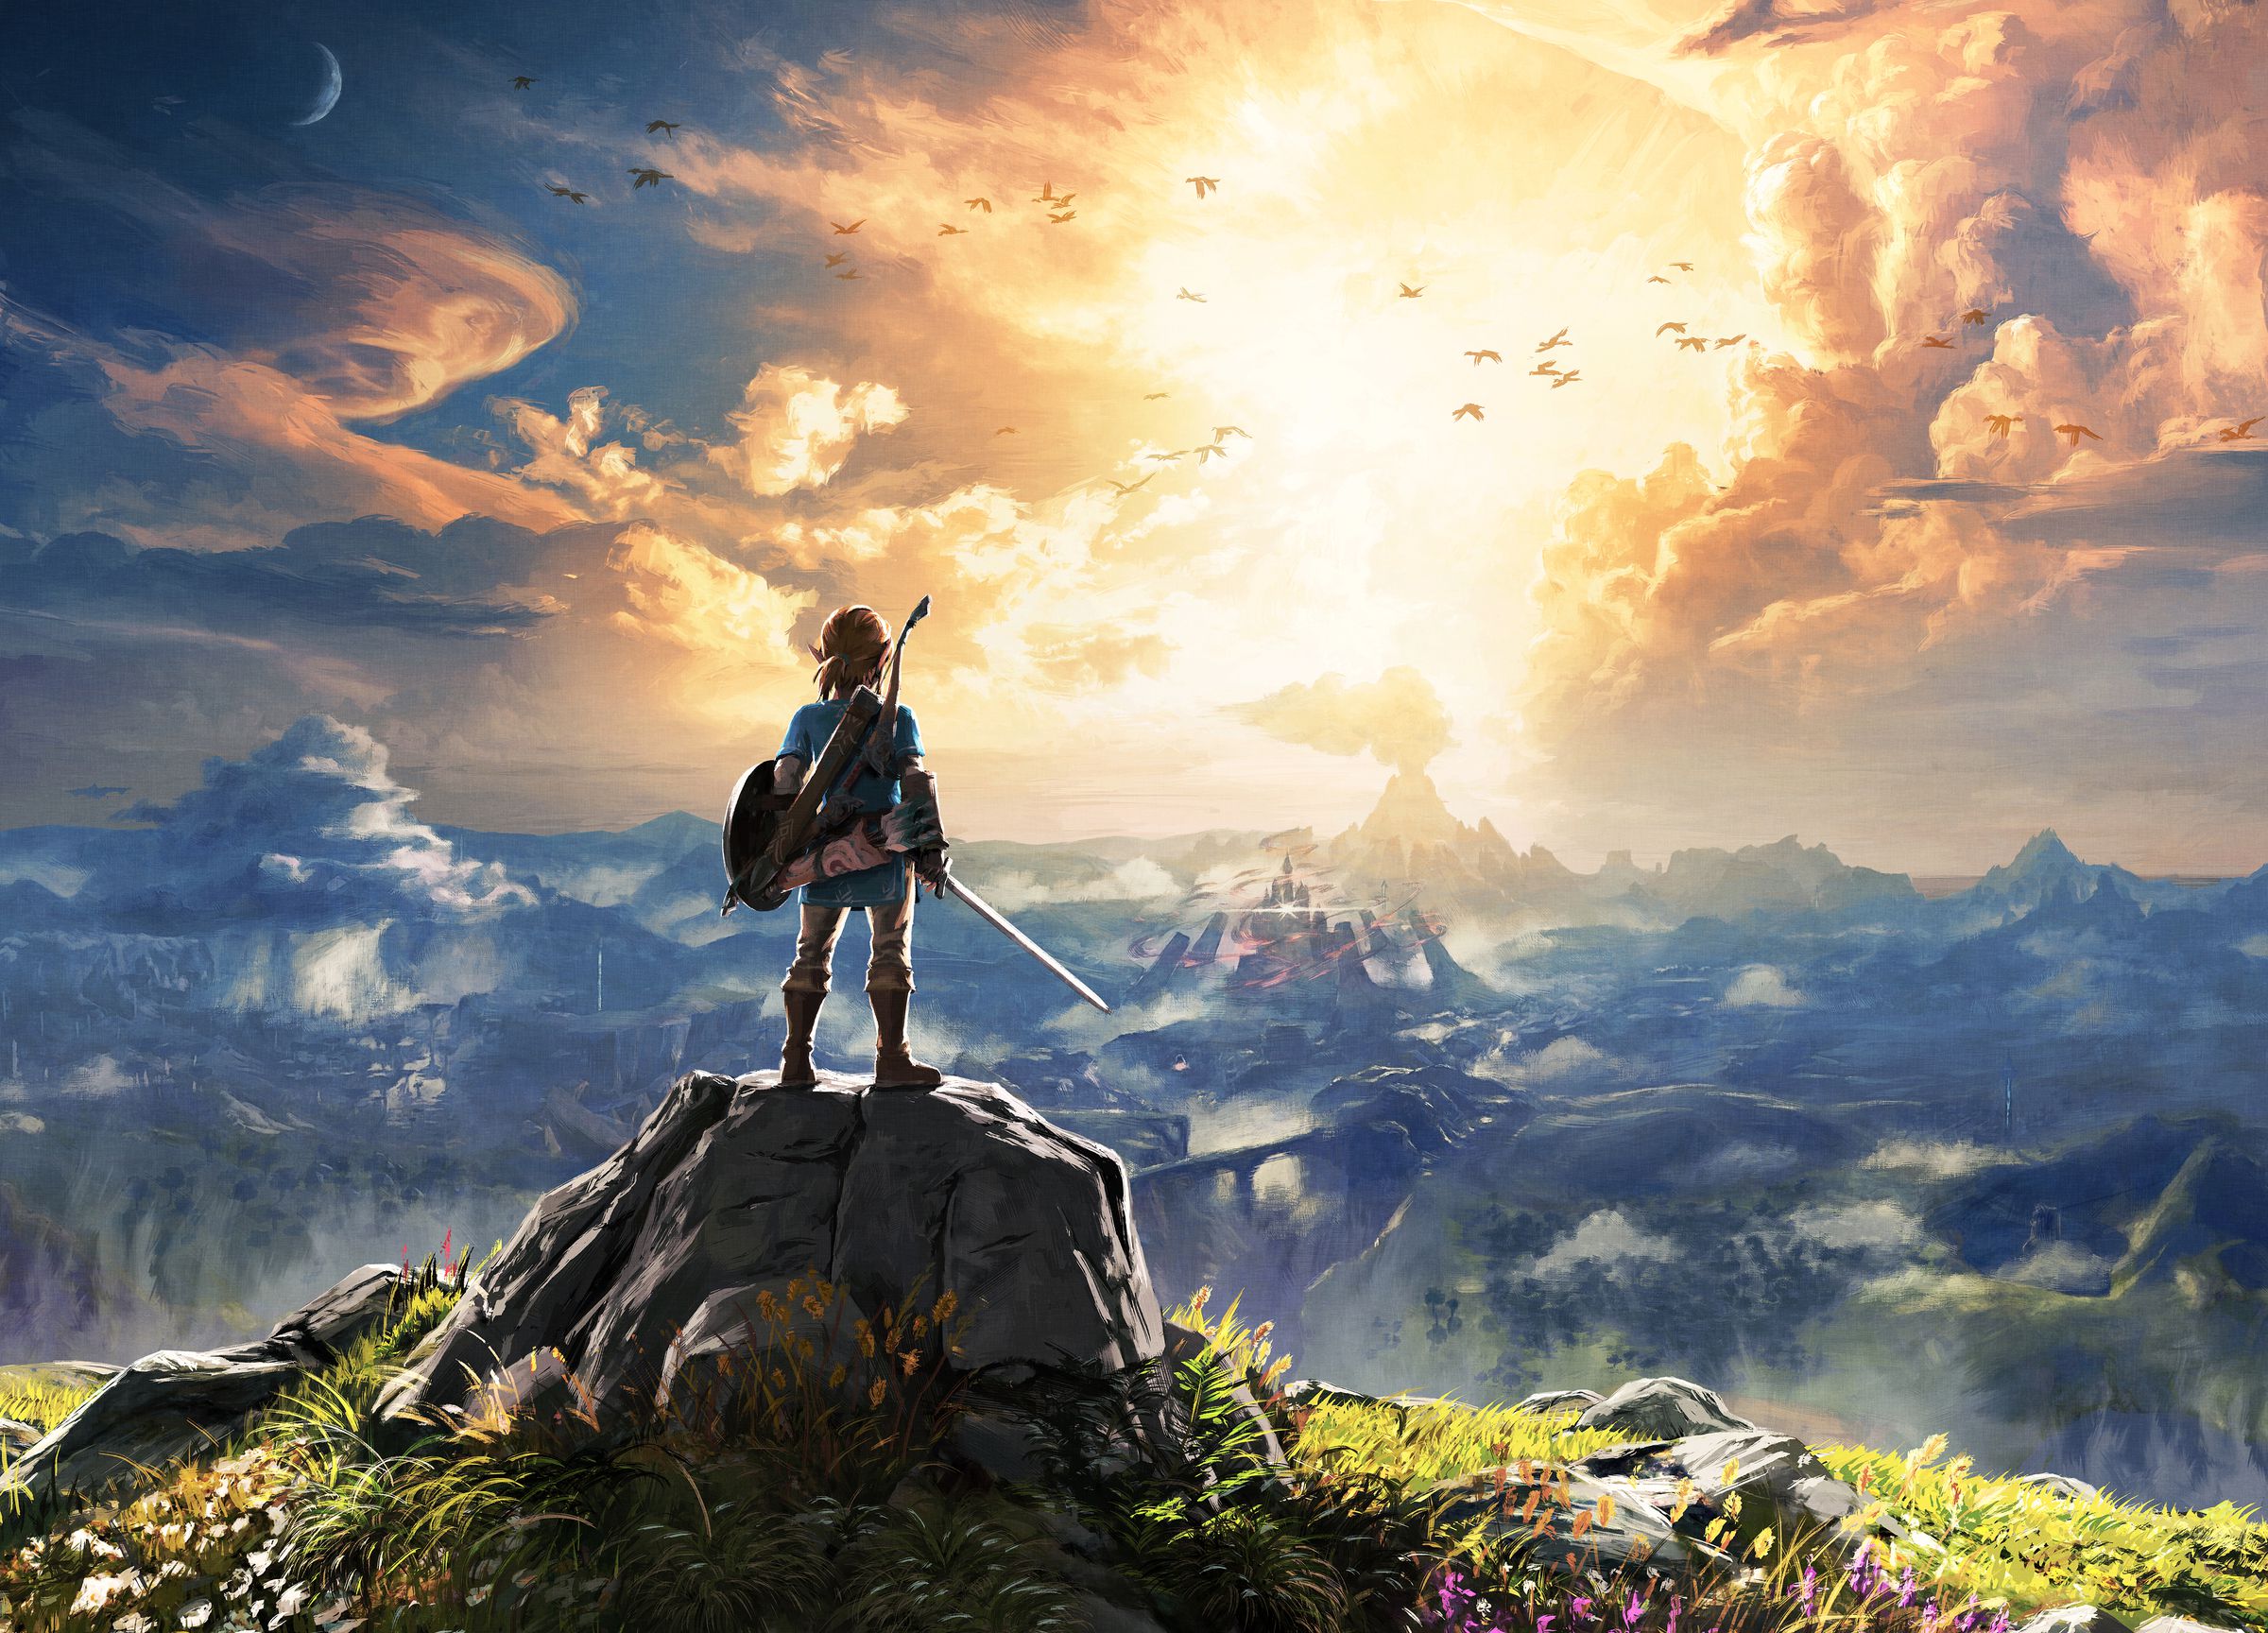 The Legend of Zelda: Breath of the Wild art